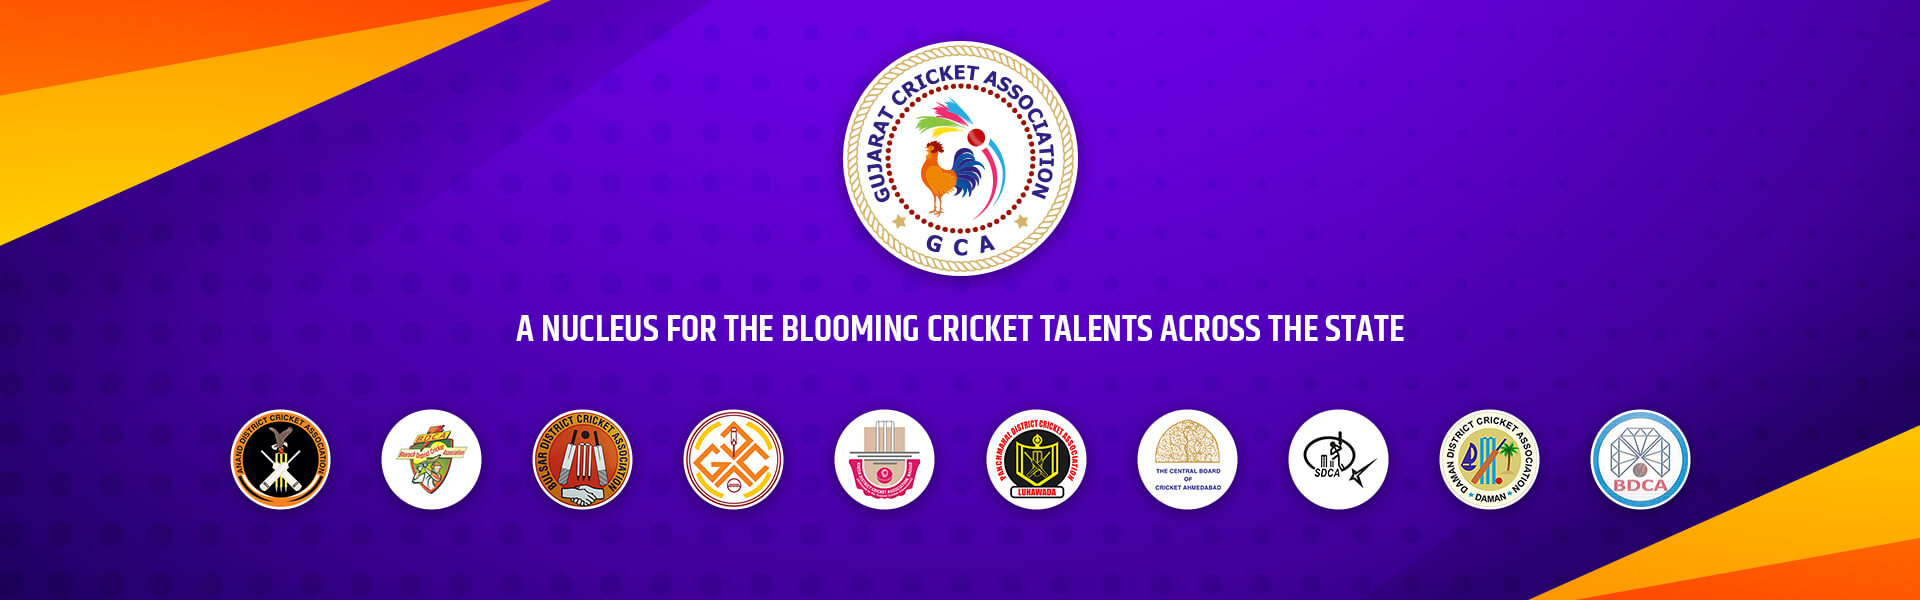 Mannar District Cricket Association